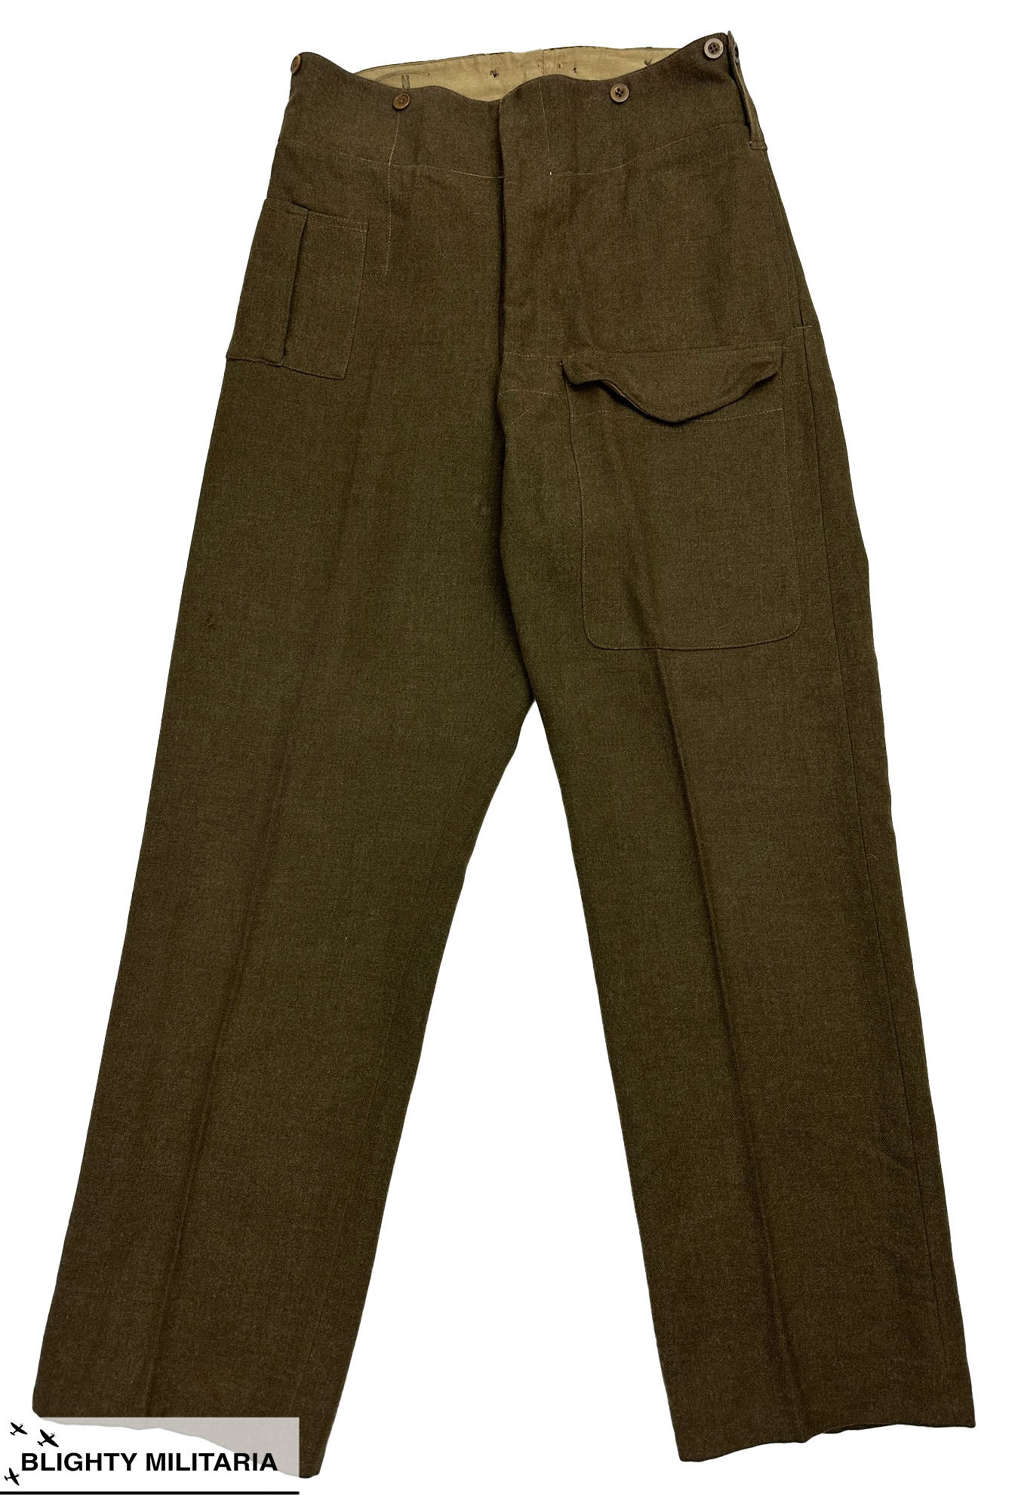 Original 1942 Dated New Zealand Made Battledress Trousers - Size 32x33